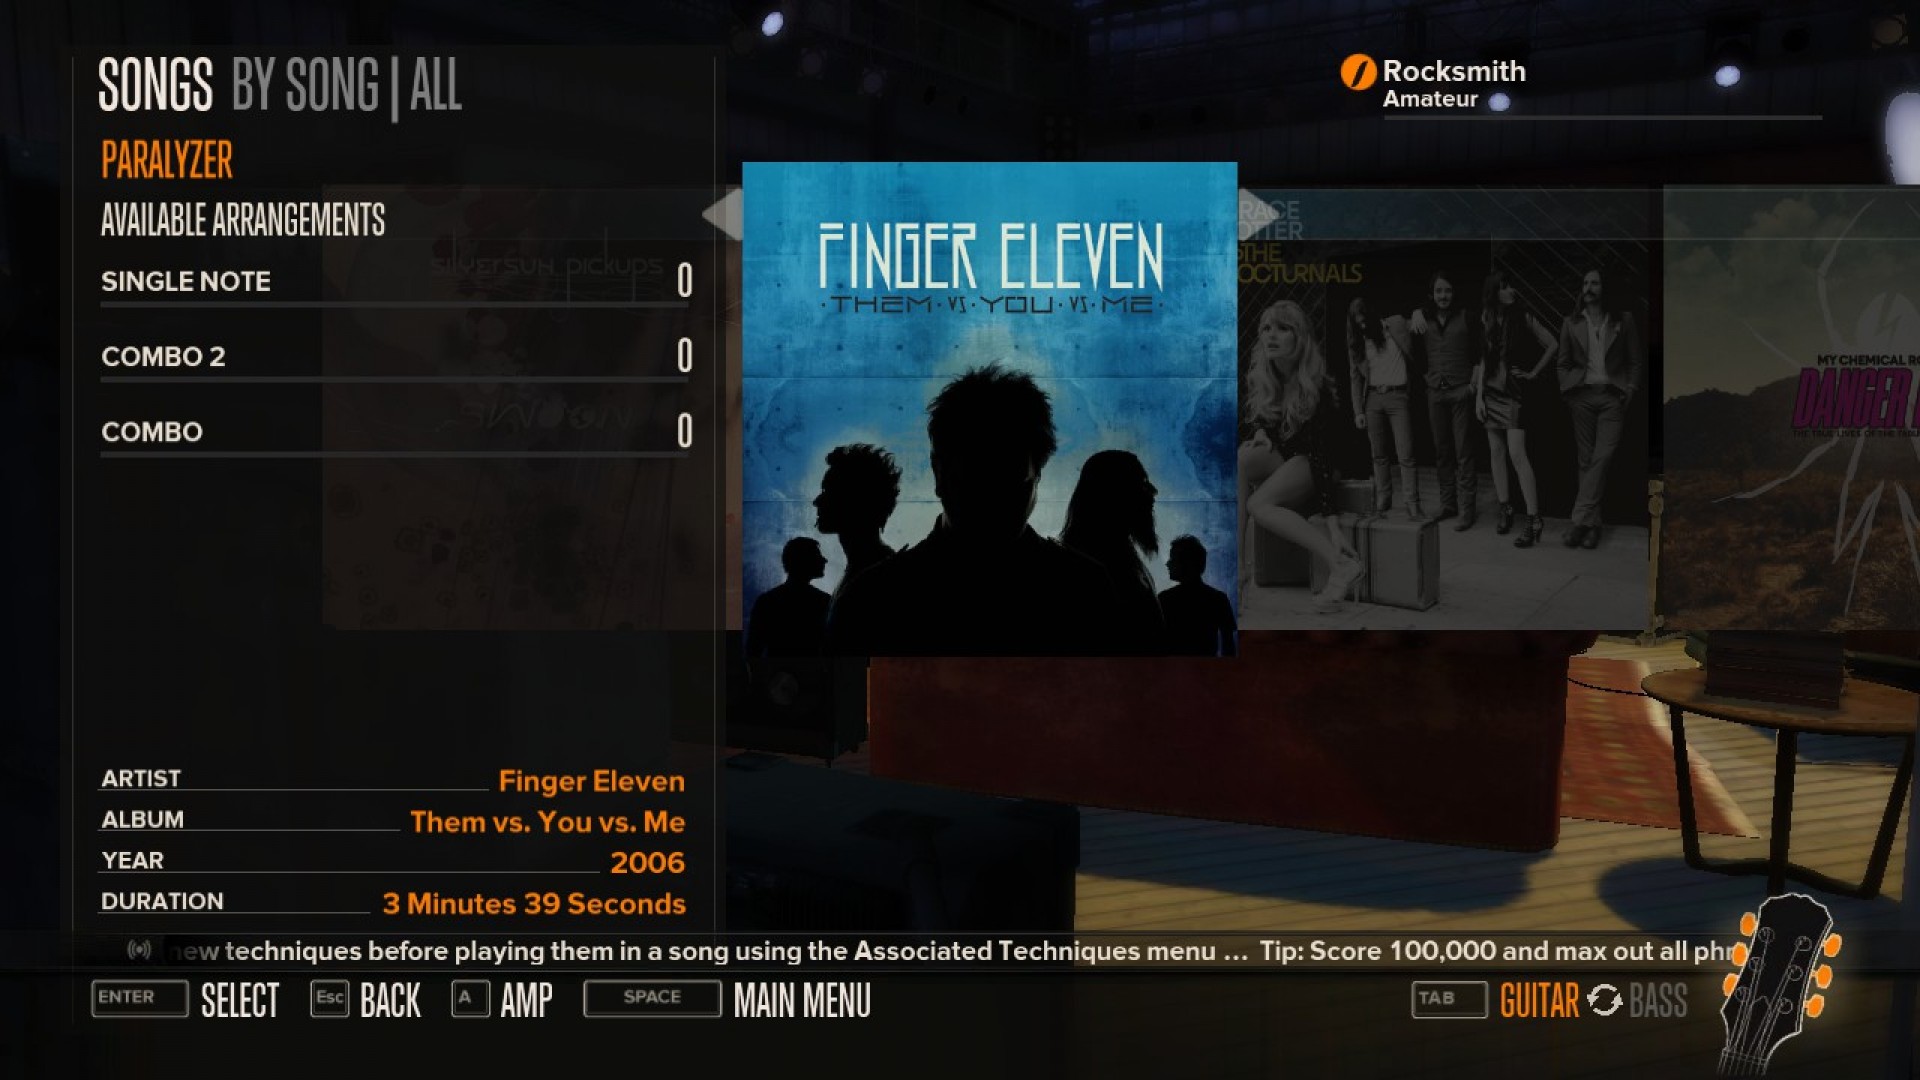 Rocksmith - Finger Eleven - Paralyzer screenshot